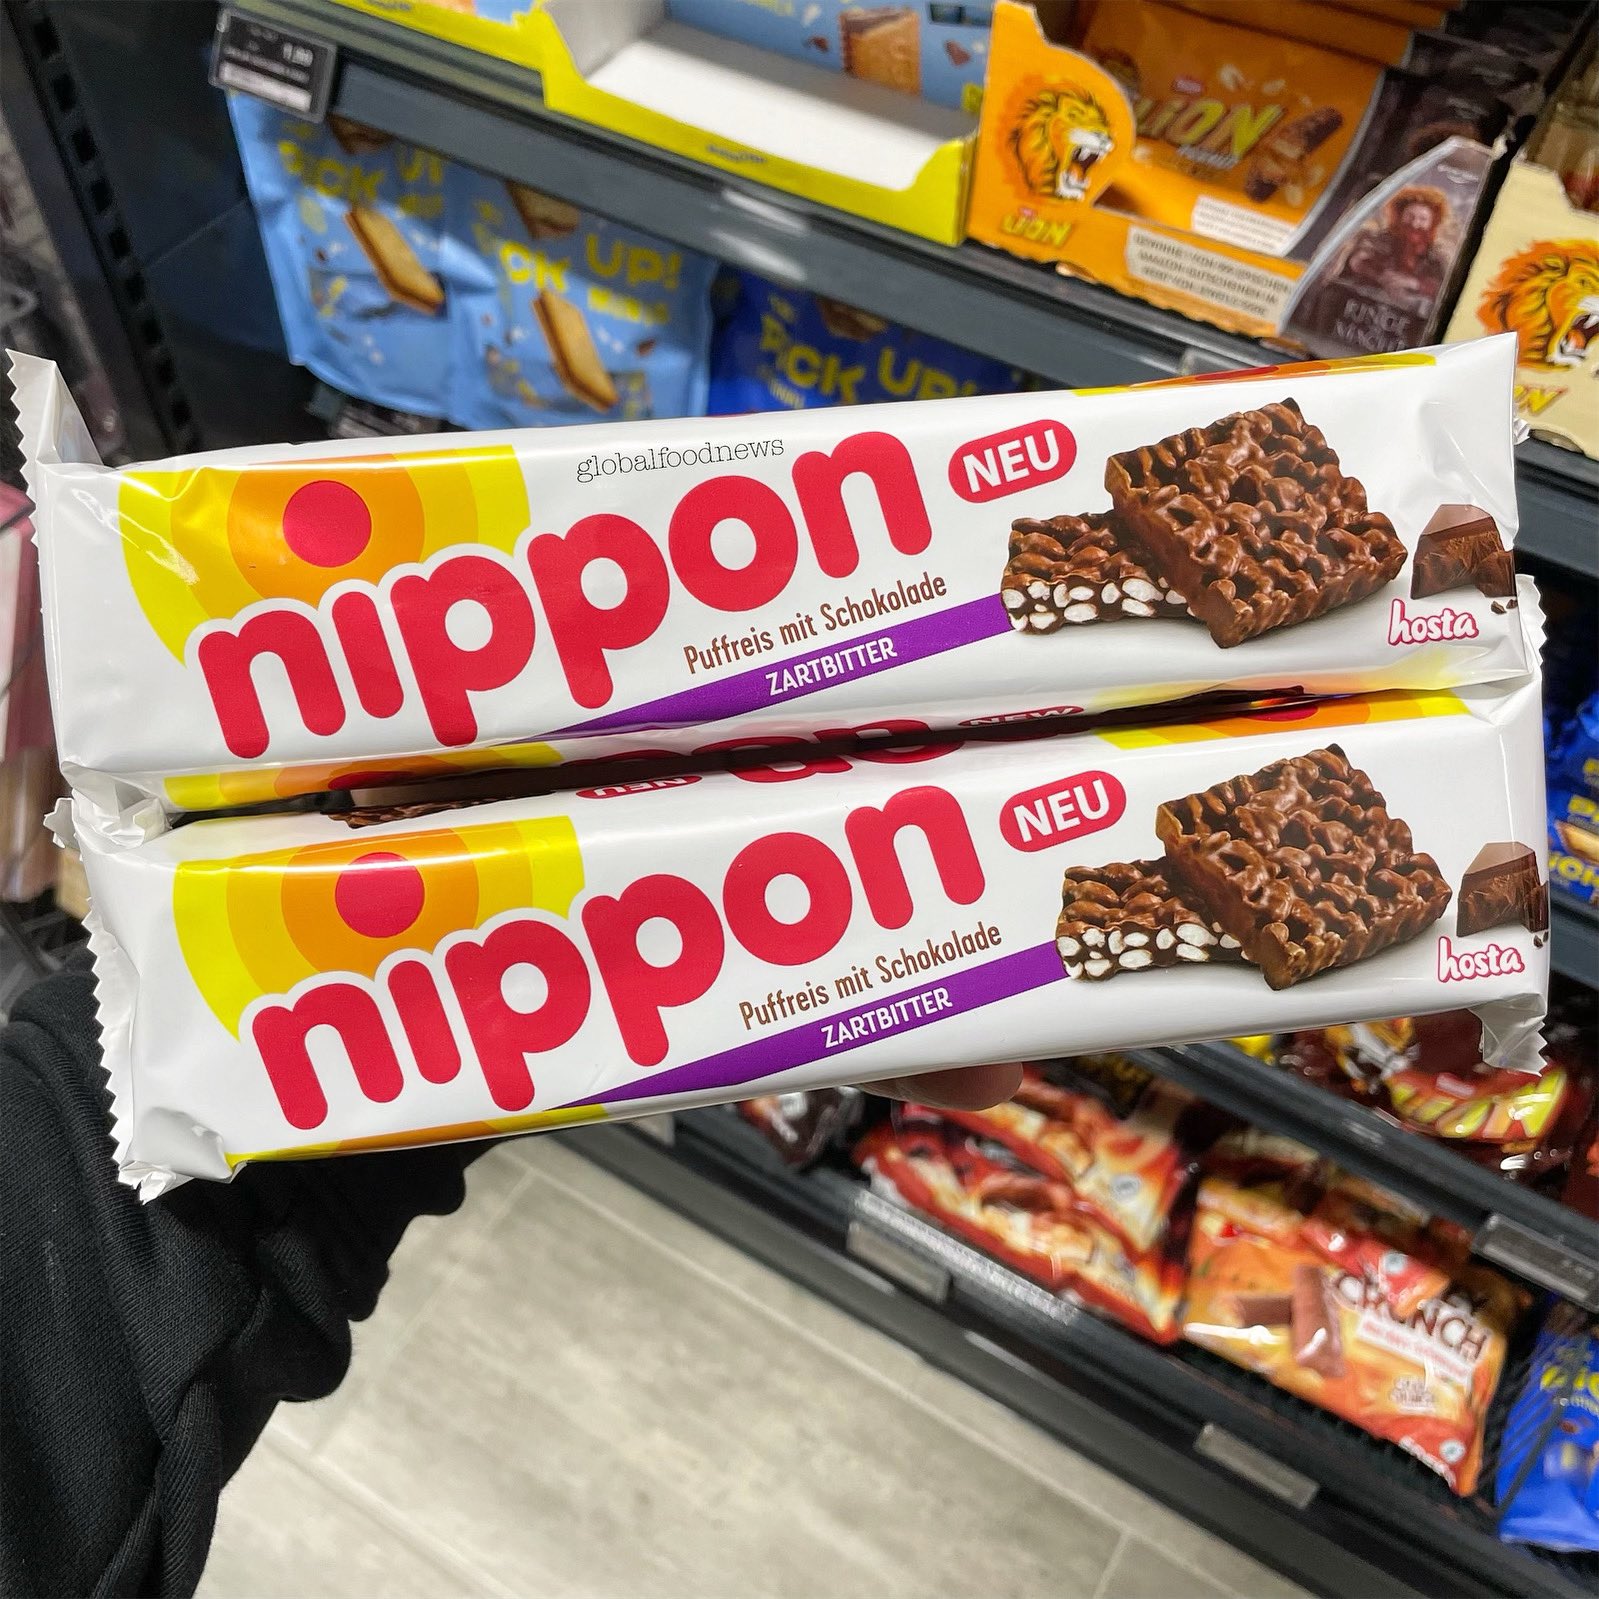 Global Food News on X: NEU • NIPPON Puffreis mit Zartbitterschokolade # nippon #puffreis #globalfoodnews  / X